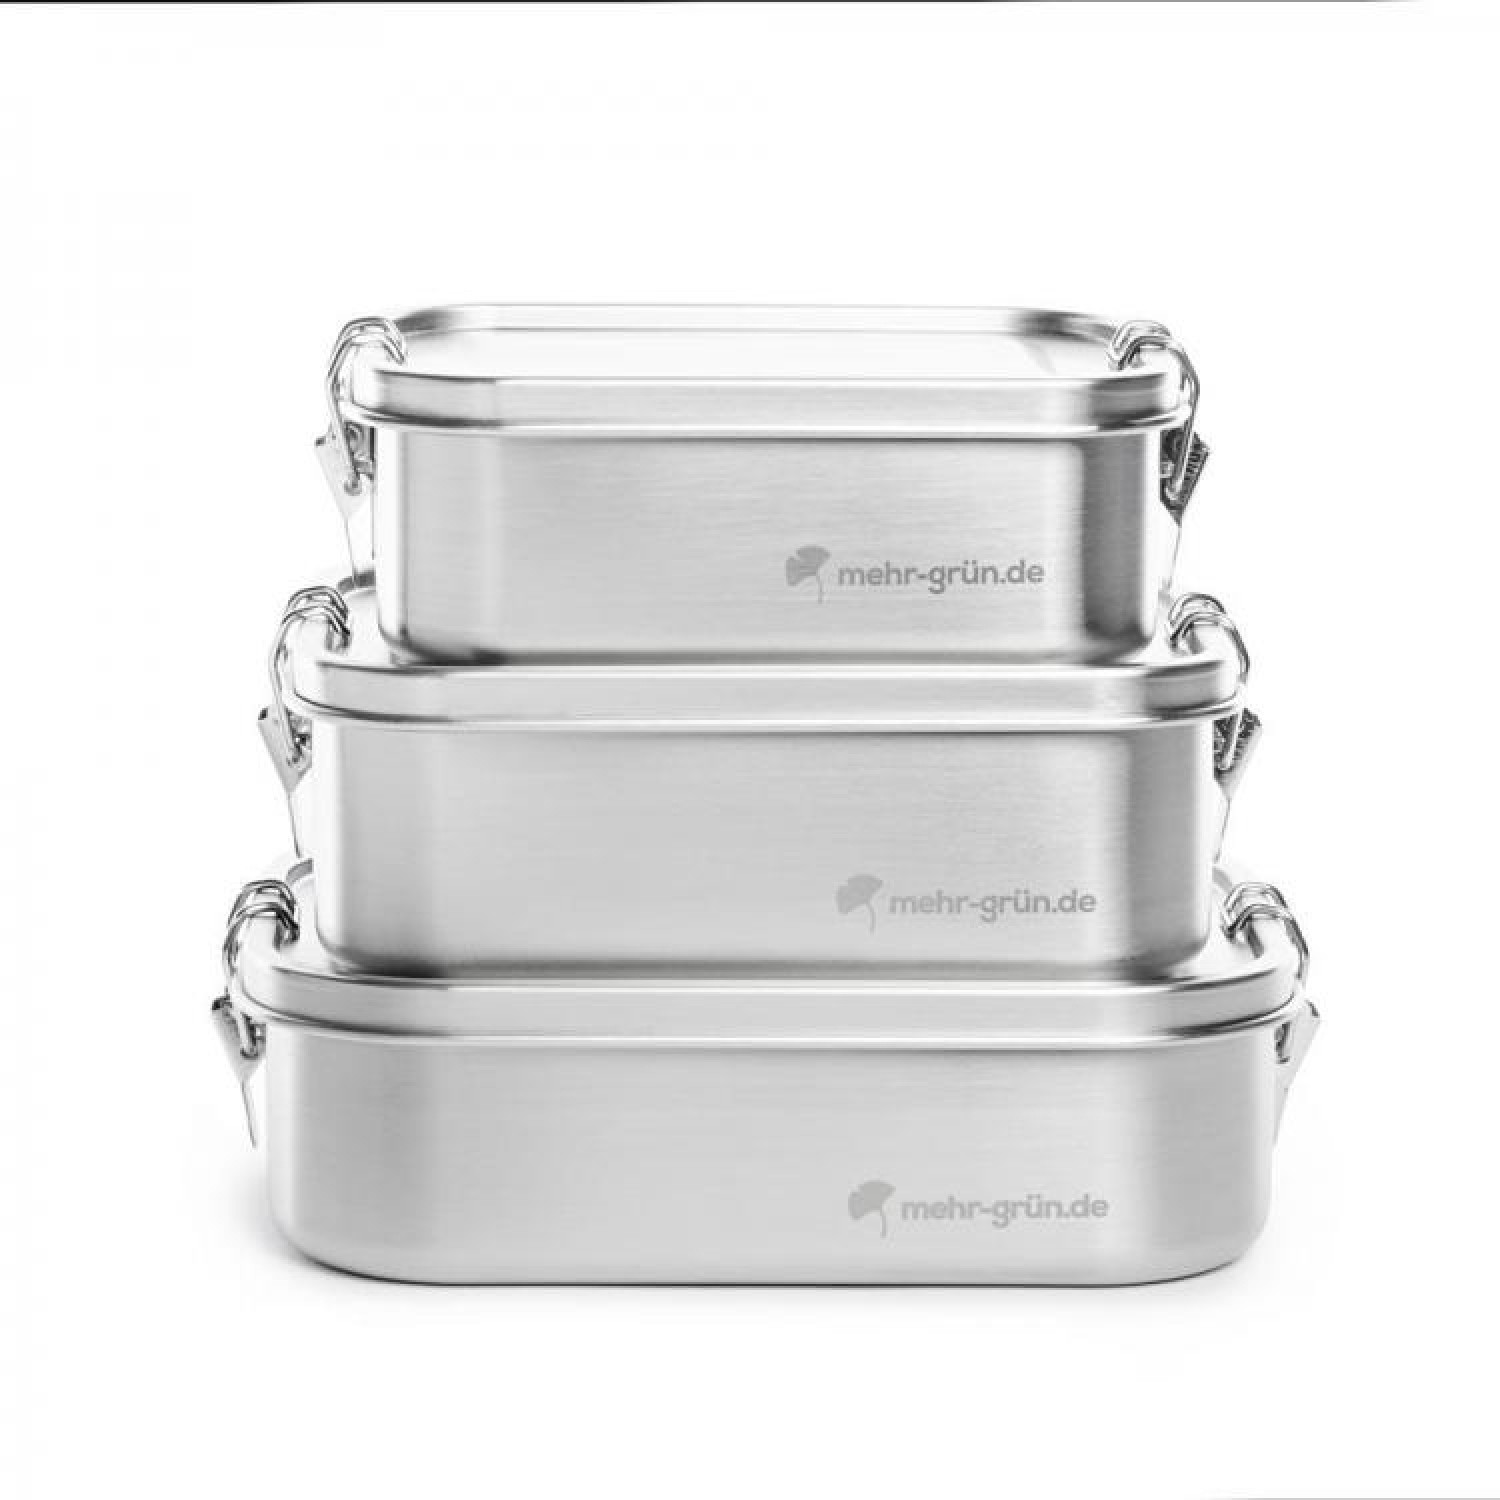 Lunchbox Stainless Steel with Divider » mehr gruen